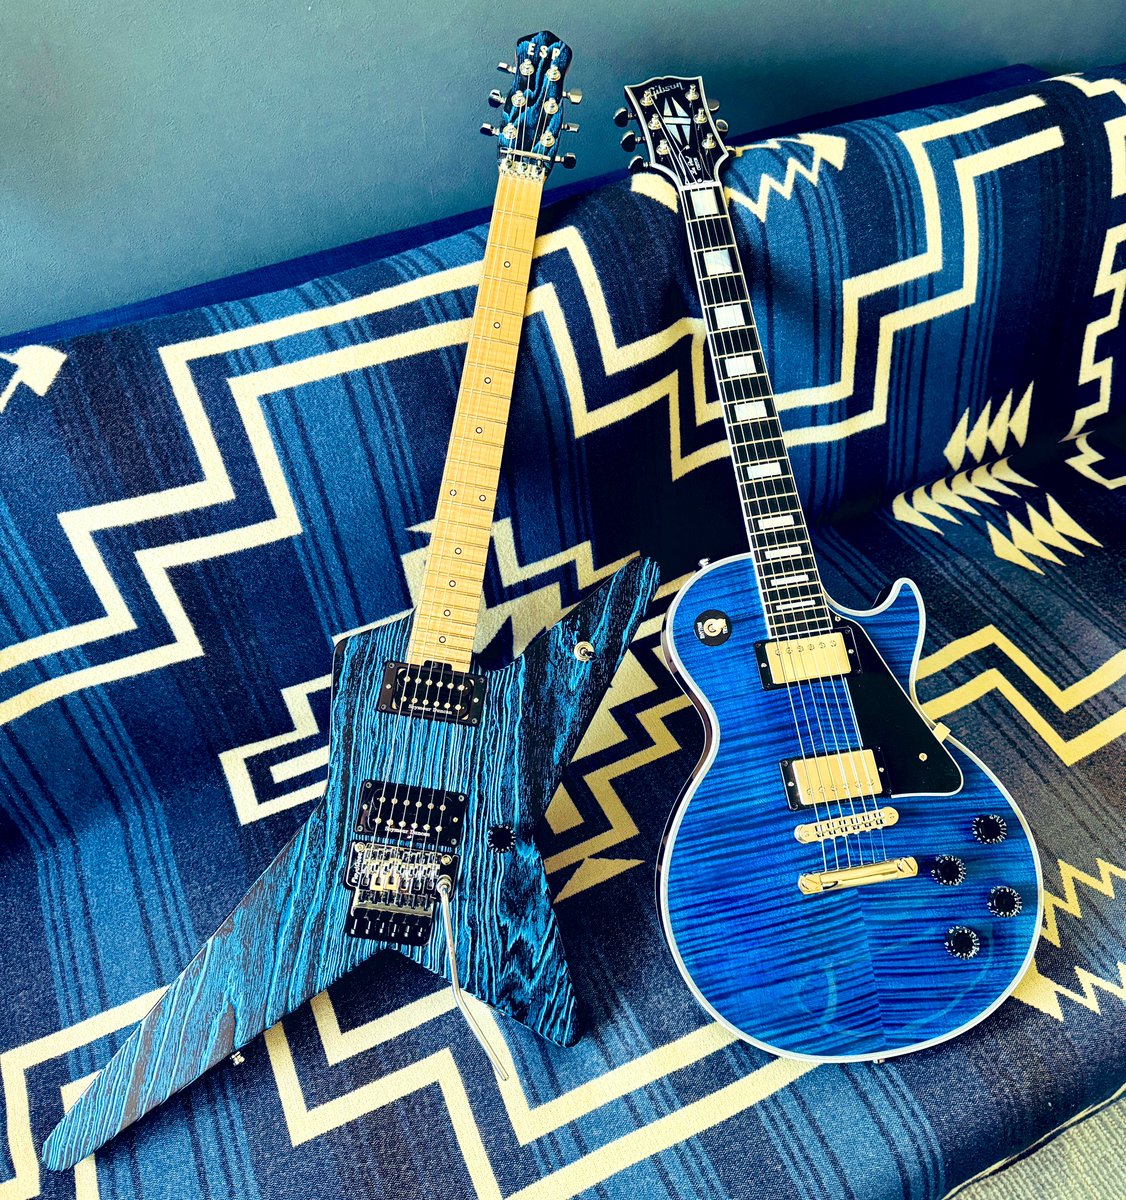 #自慢の青いギターを晒せ 

ウチには青🩵にまつわるギターしかないのですが、純粋に青はこの2本かな。

#ESP #randomstar #gibson #lespaulcustom